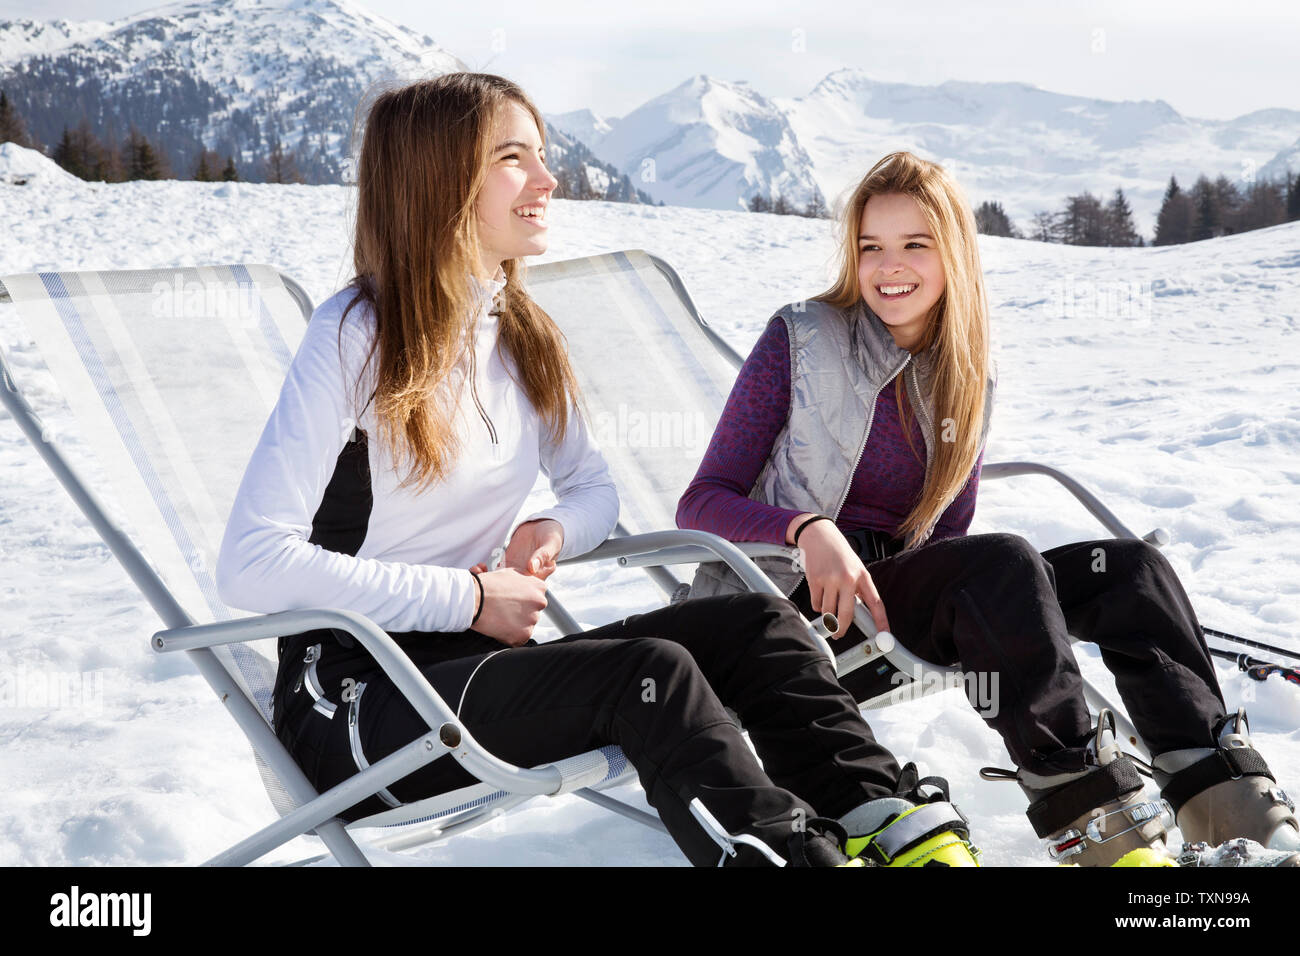 Deux skieurs adolescente assis dans des transats en paysage couvert de neige, Tyrol, Styrie, Autriche Banque D'Images